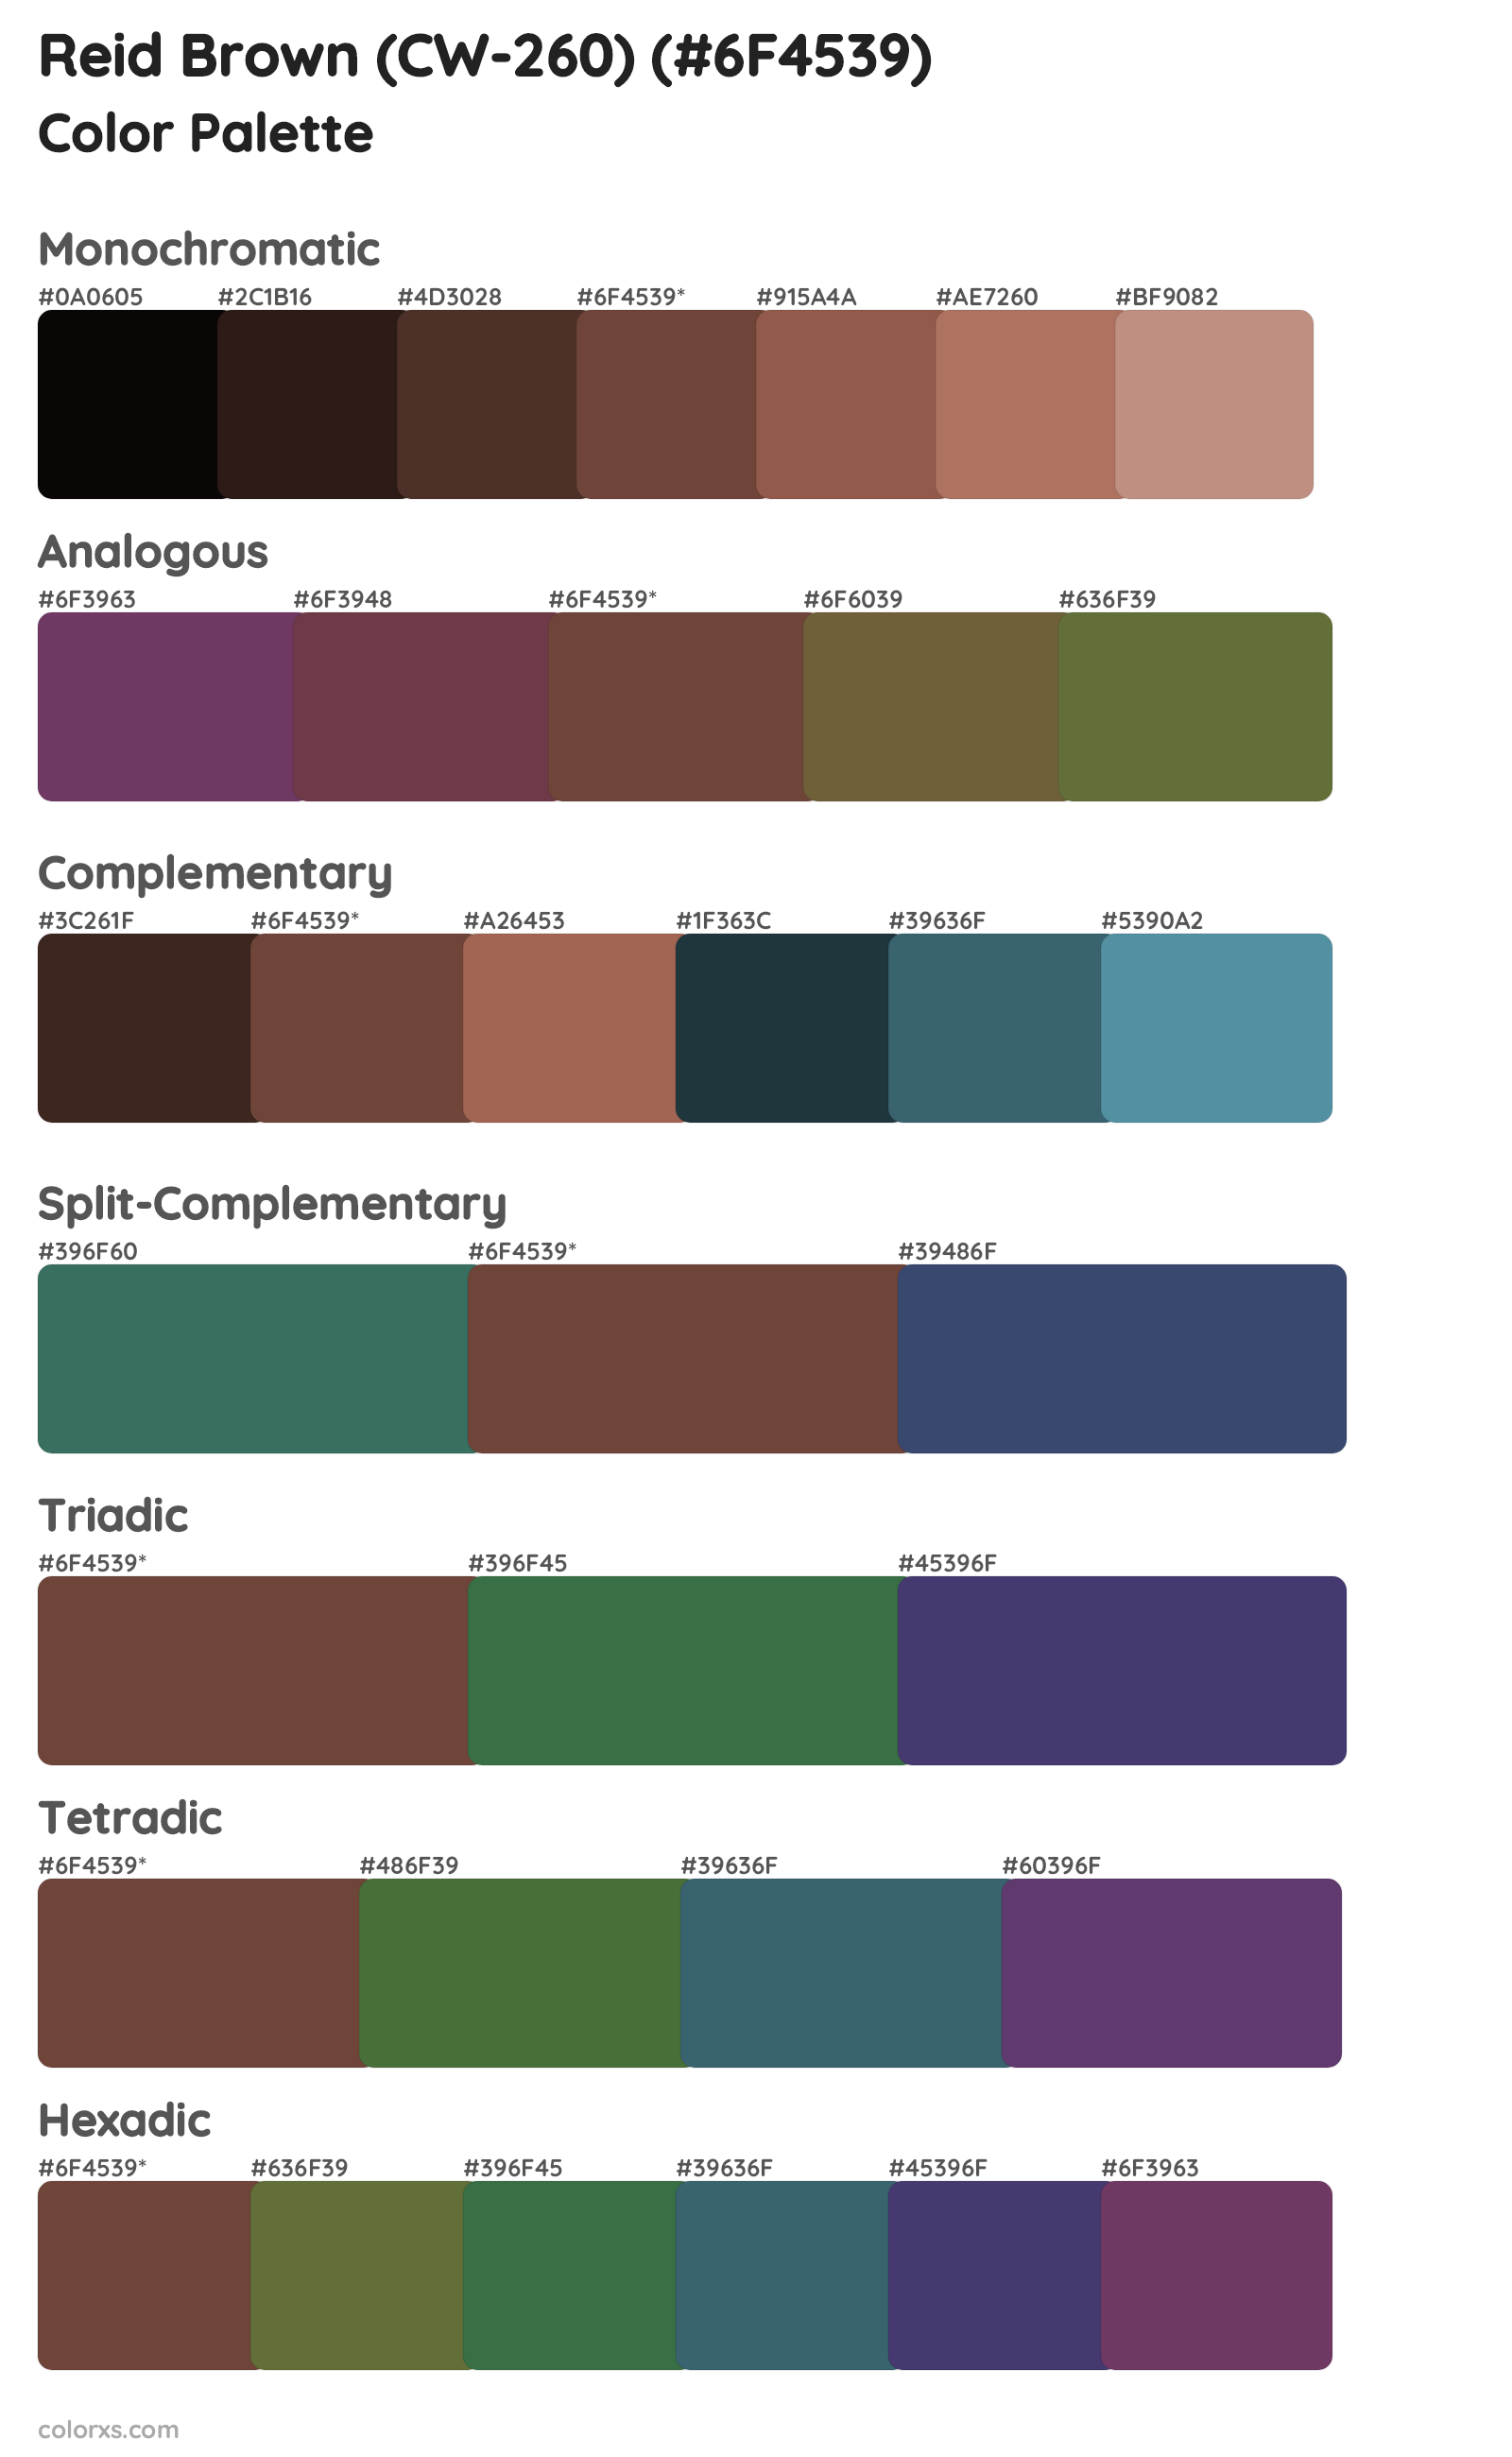 Reid Brown (CW-260) Color Scheme Palettes